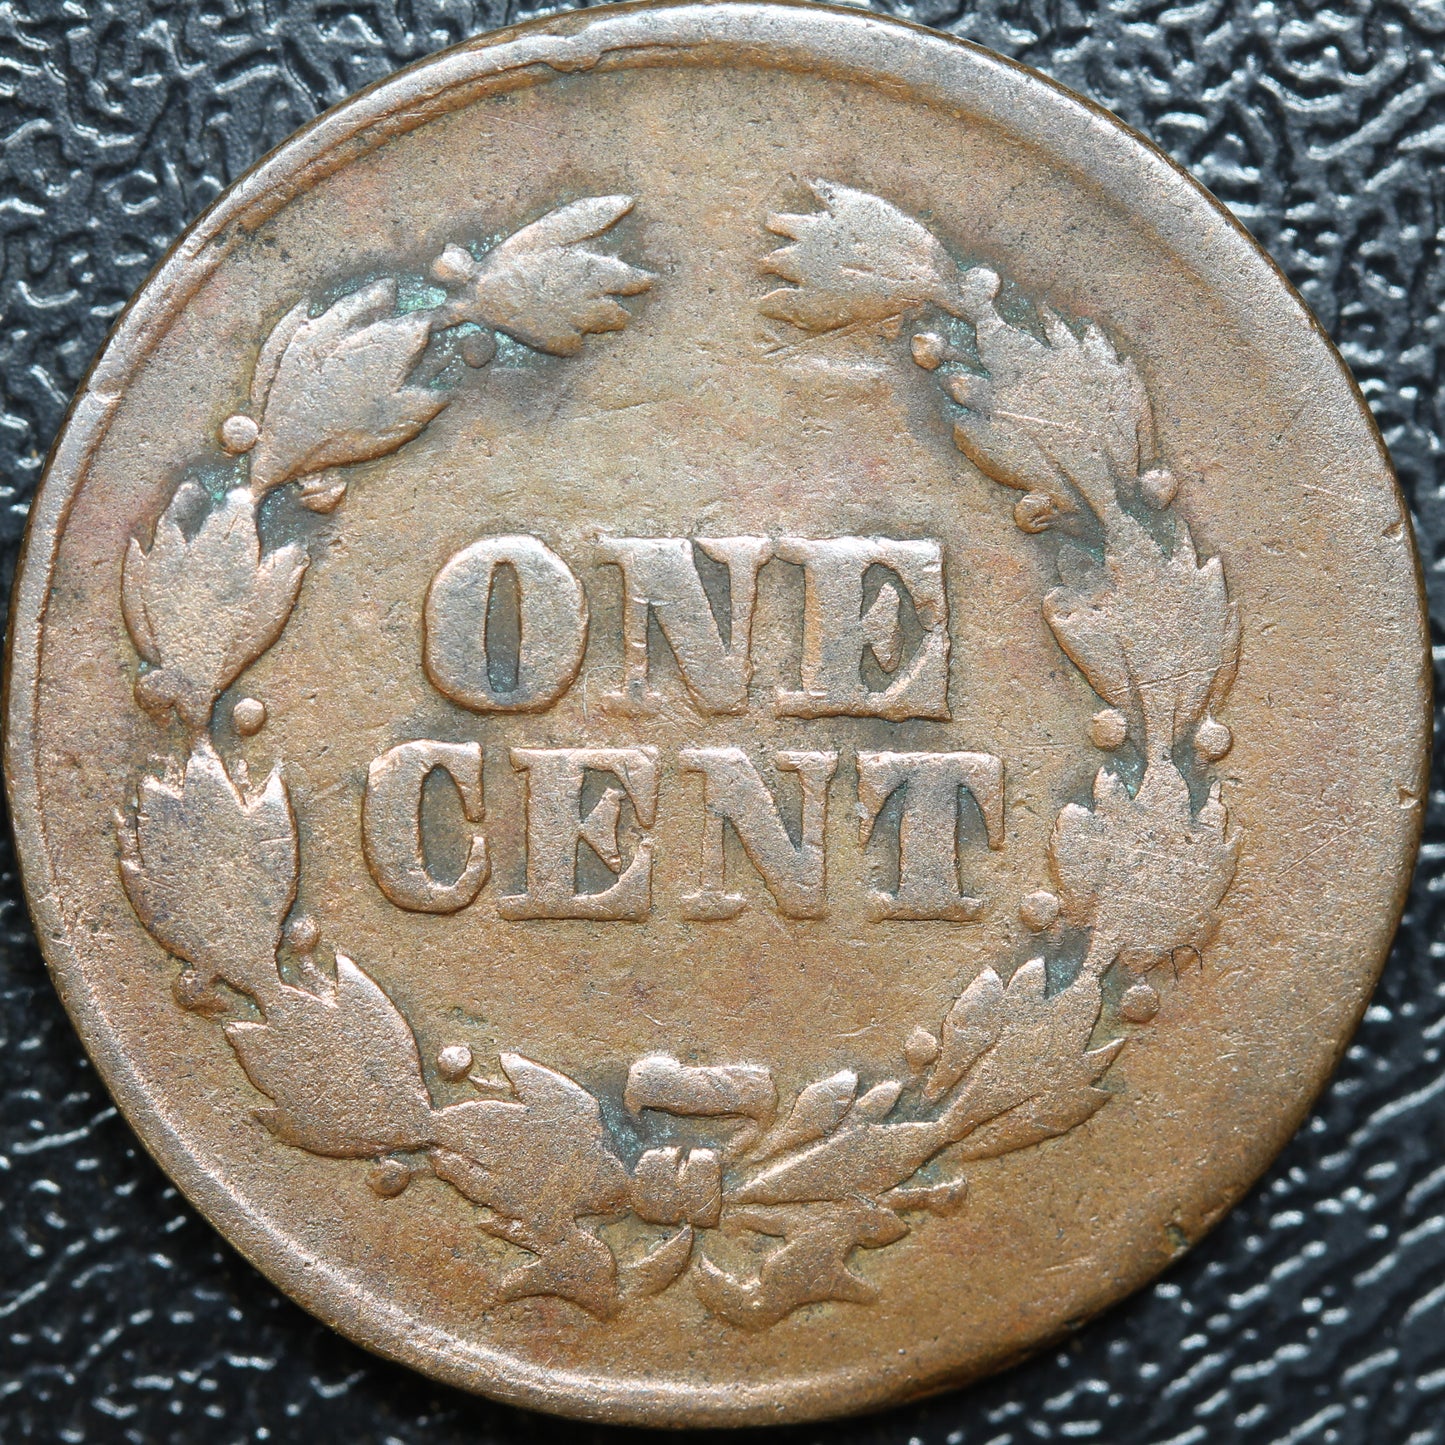 1863 Civil War Token "Not One Cent" F-61/355a